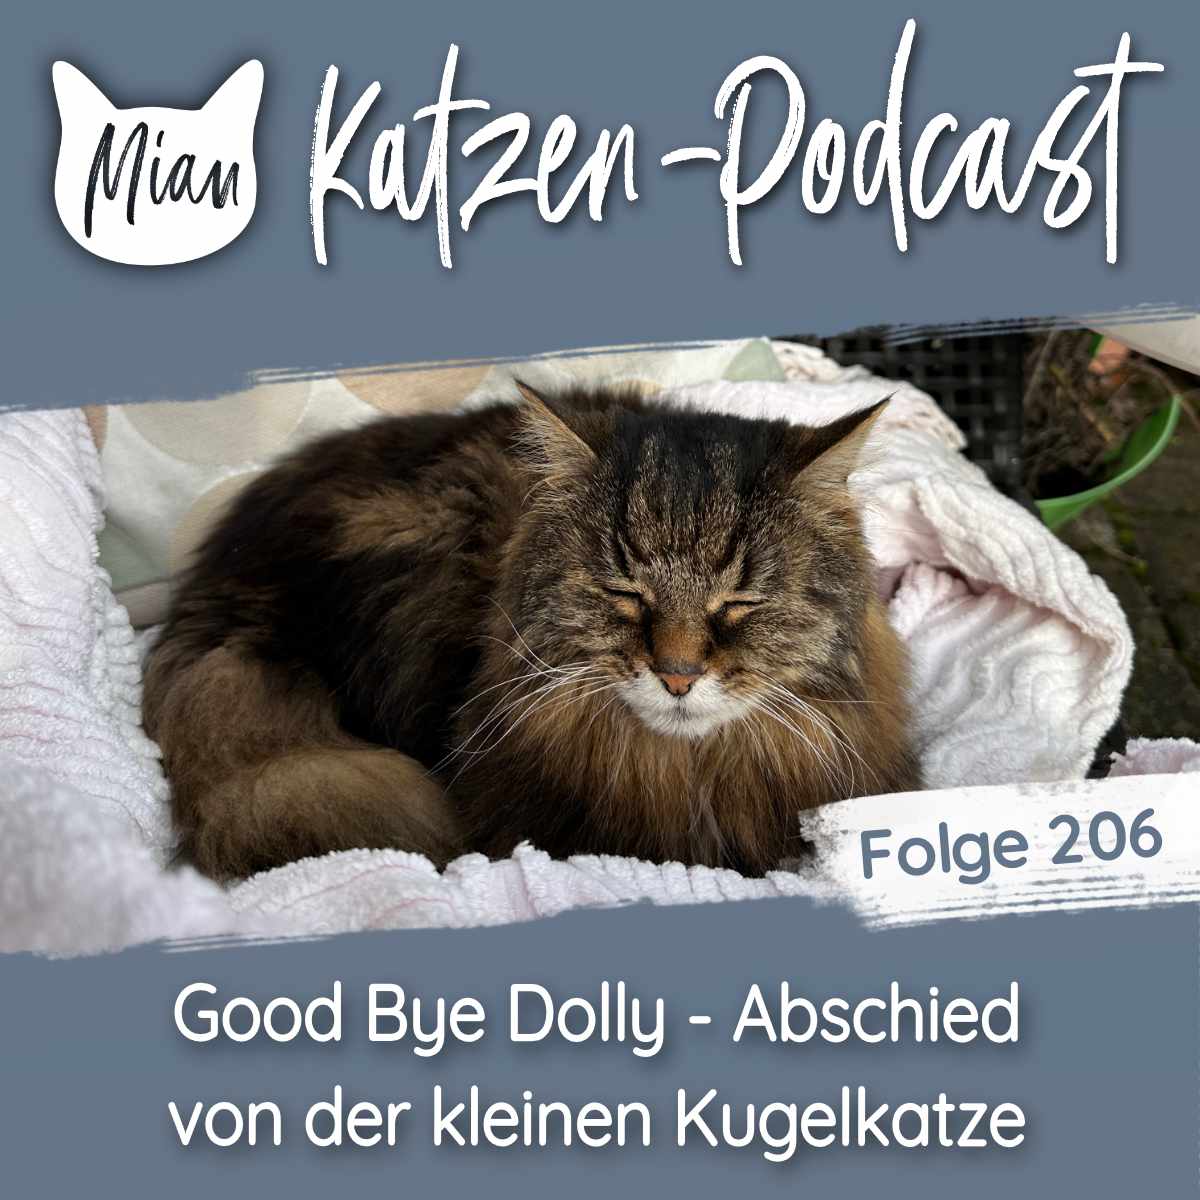 Good Bye Dolly - Abschied von der kleinen Kugelkatze | MKP206